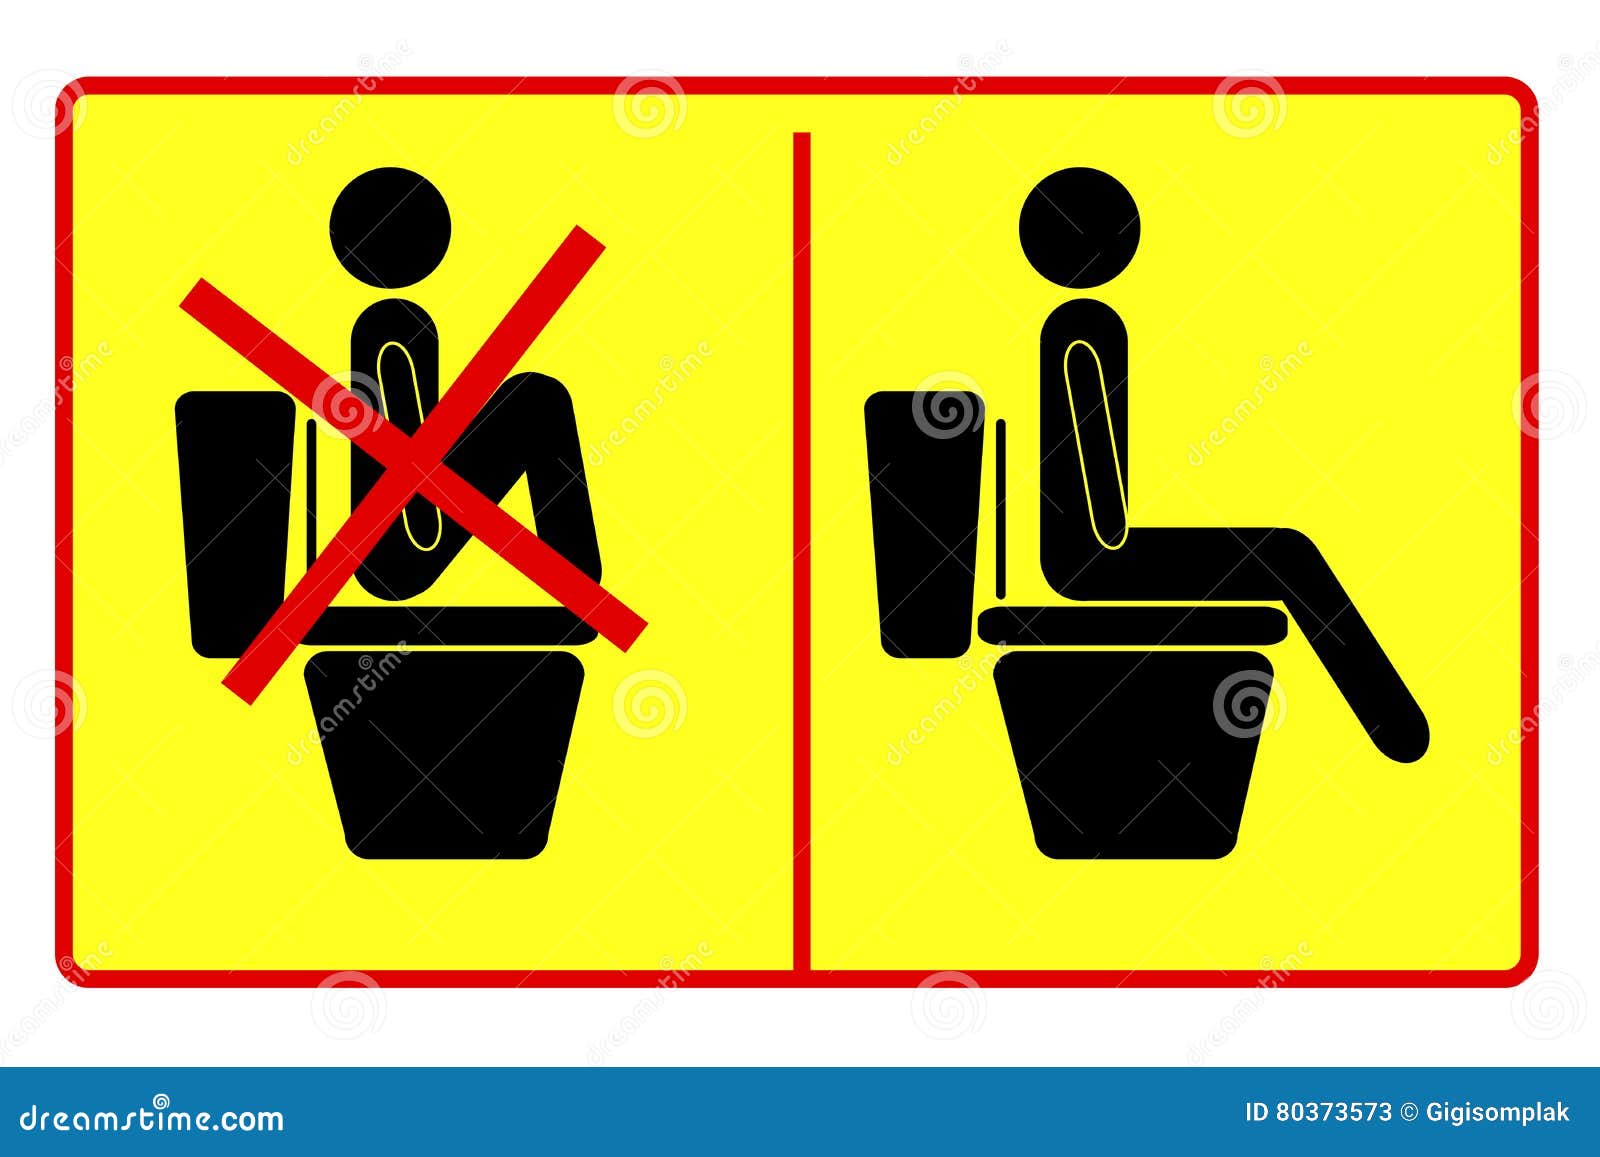 Терпит в туалет нельзя в туалет. Табличка "туалет". Ногами на унитаз не вставать табличка. Запрещающие знаки в туалете.